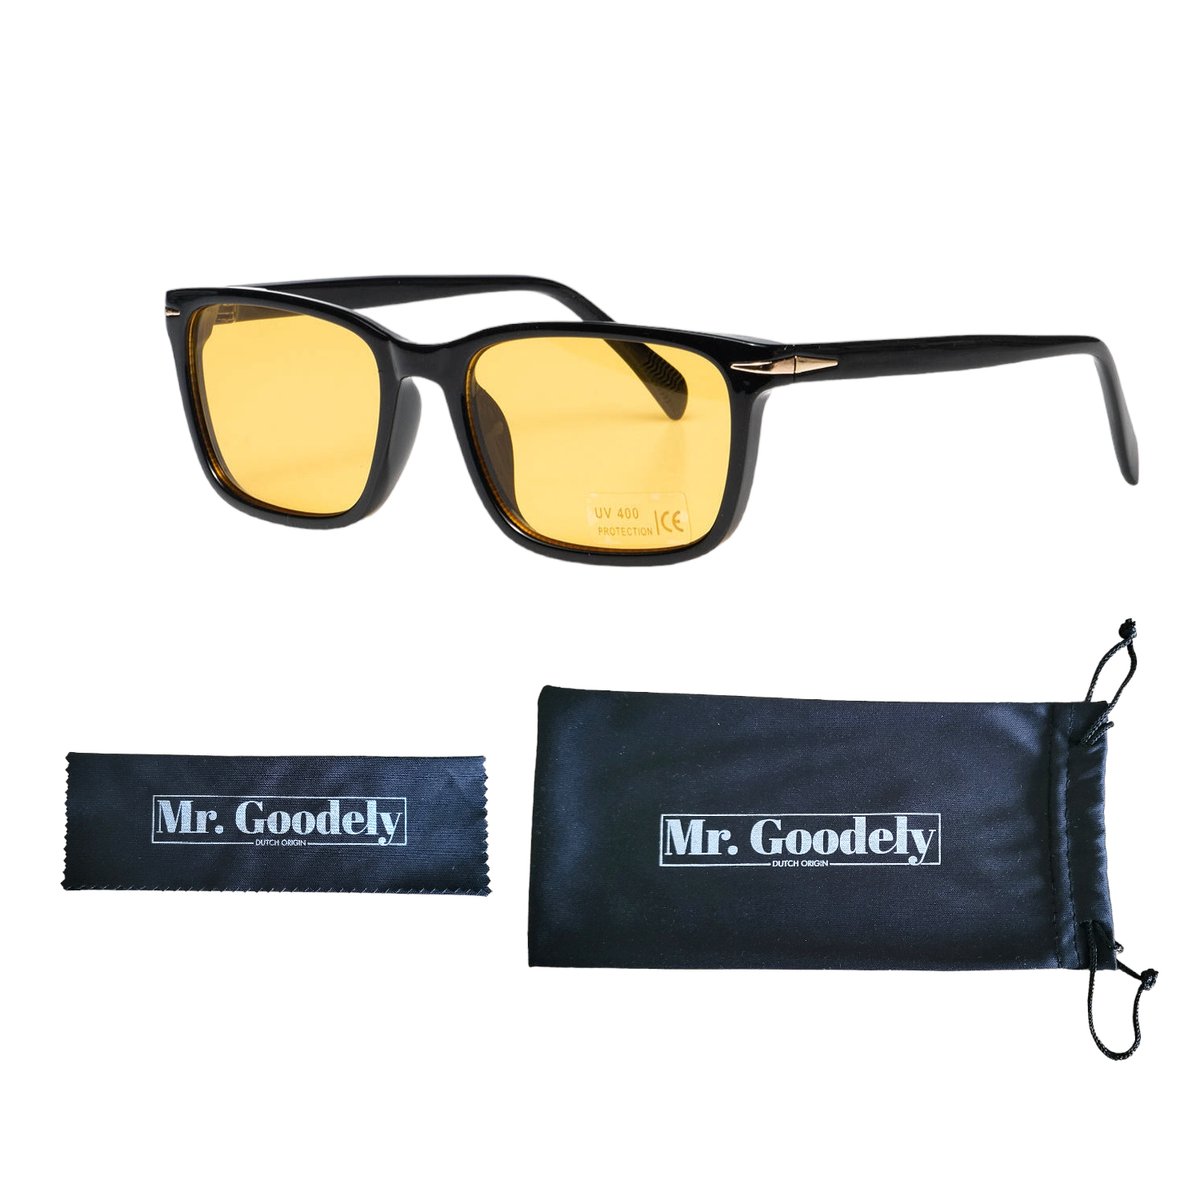 Nachtbril voor Auto - Nachtbril Autobril Dames & Heren - Polarized Overzetbril - Clip-On Nachtbril voor Veiliger Rijden